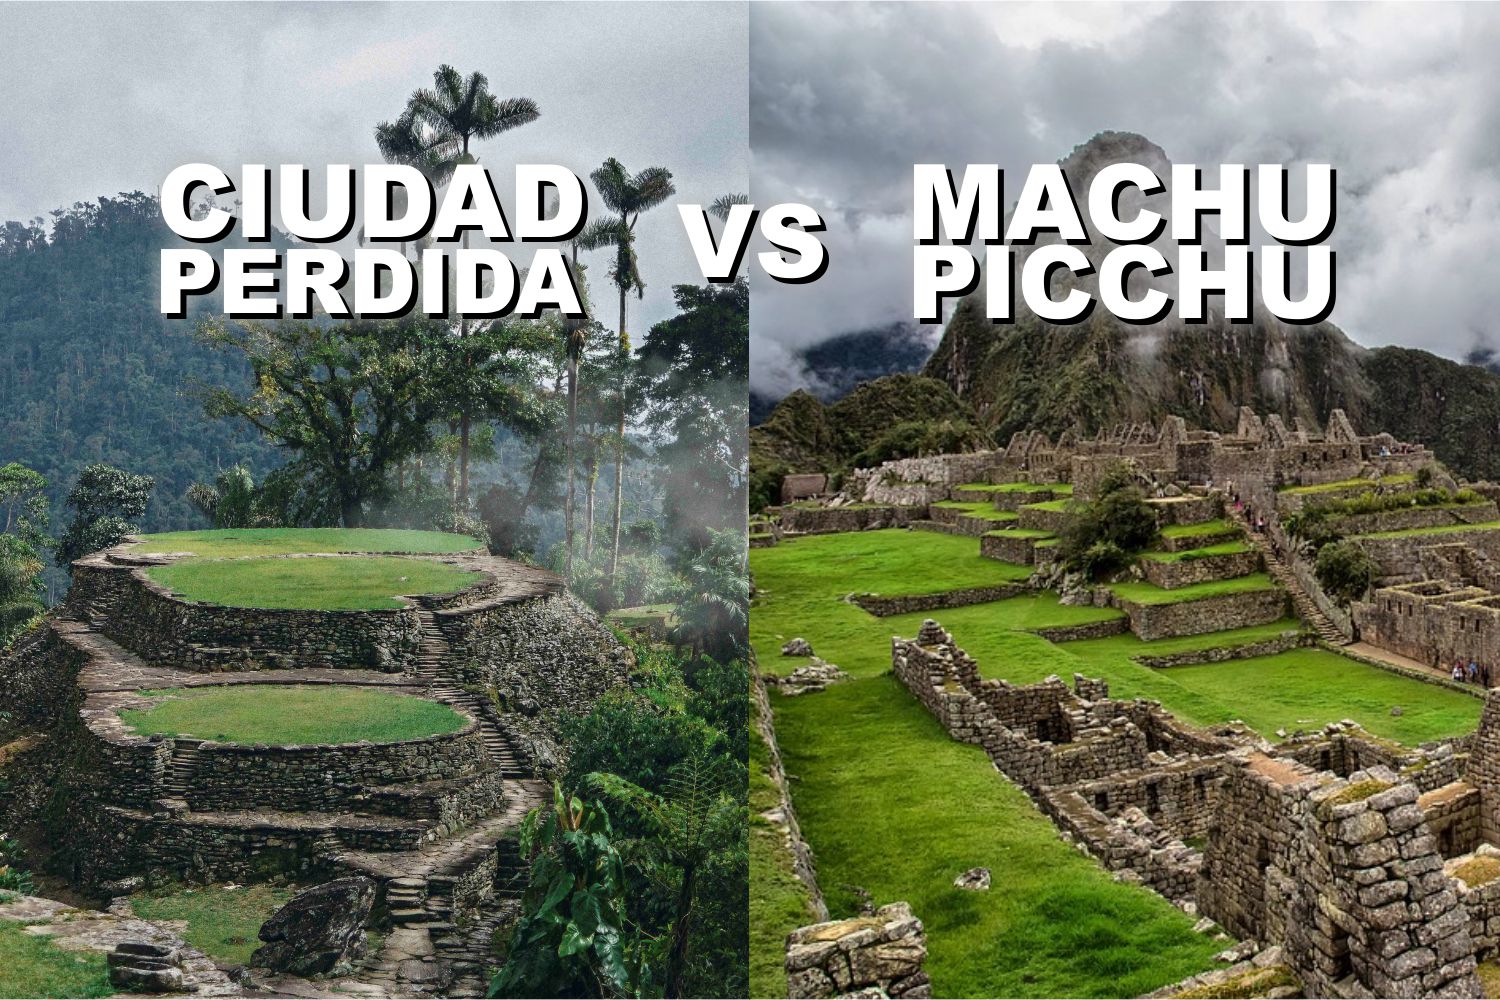 ciudad perdida y machu picchu, bellezas arqueologicas de suramerica. Colombia y Perú